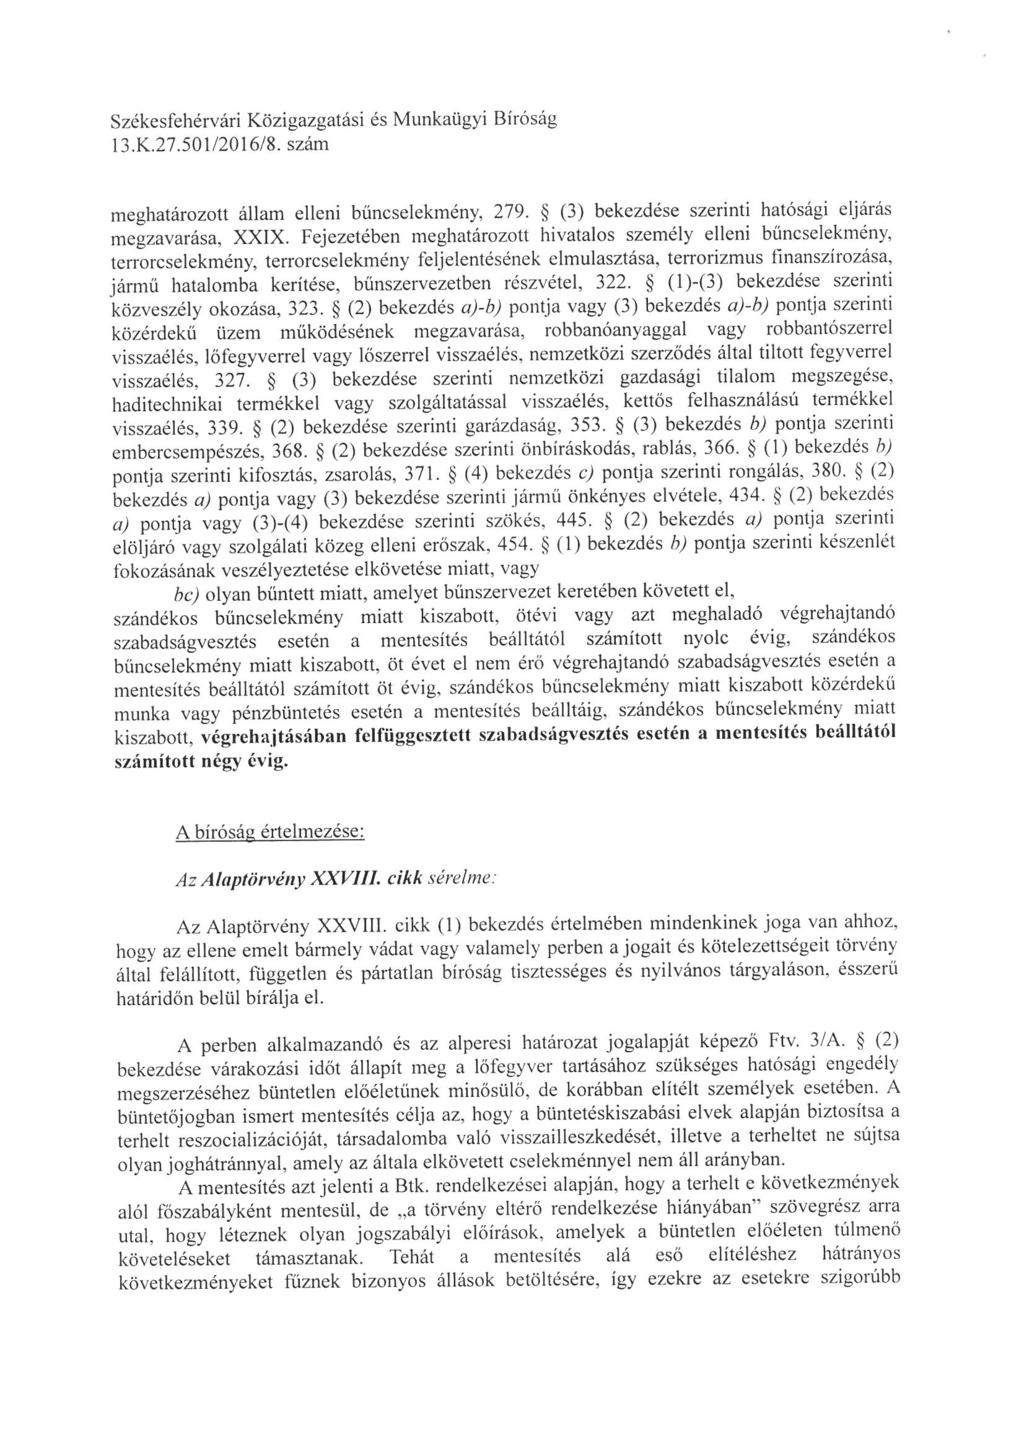 Székesfehérvári Közigazgatási és Munkaügyi Biróság meghatározott állam elleni bűncselekmény, 279. (3) bekezdése szerinti hatósági eljárás megzavarása, XXIX.